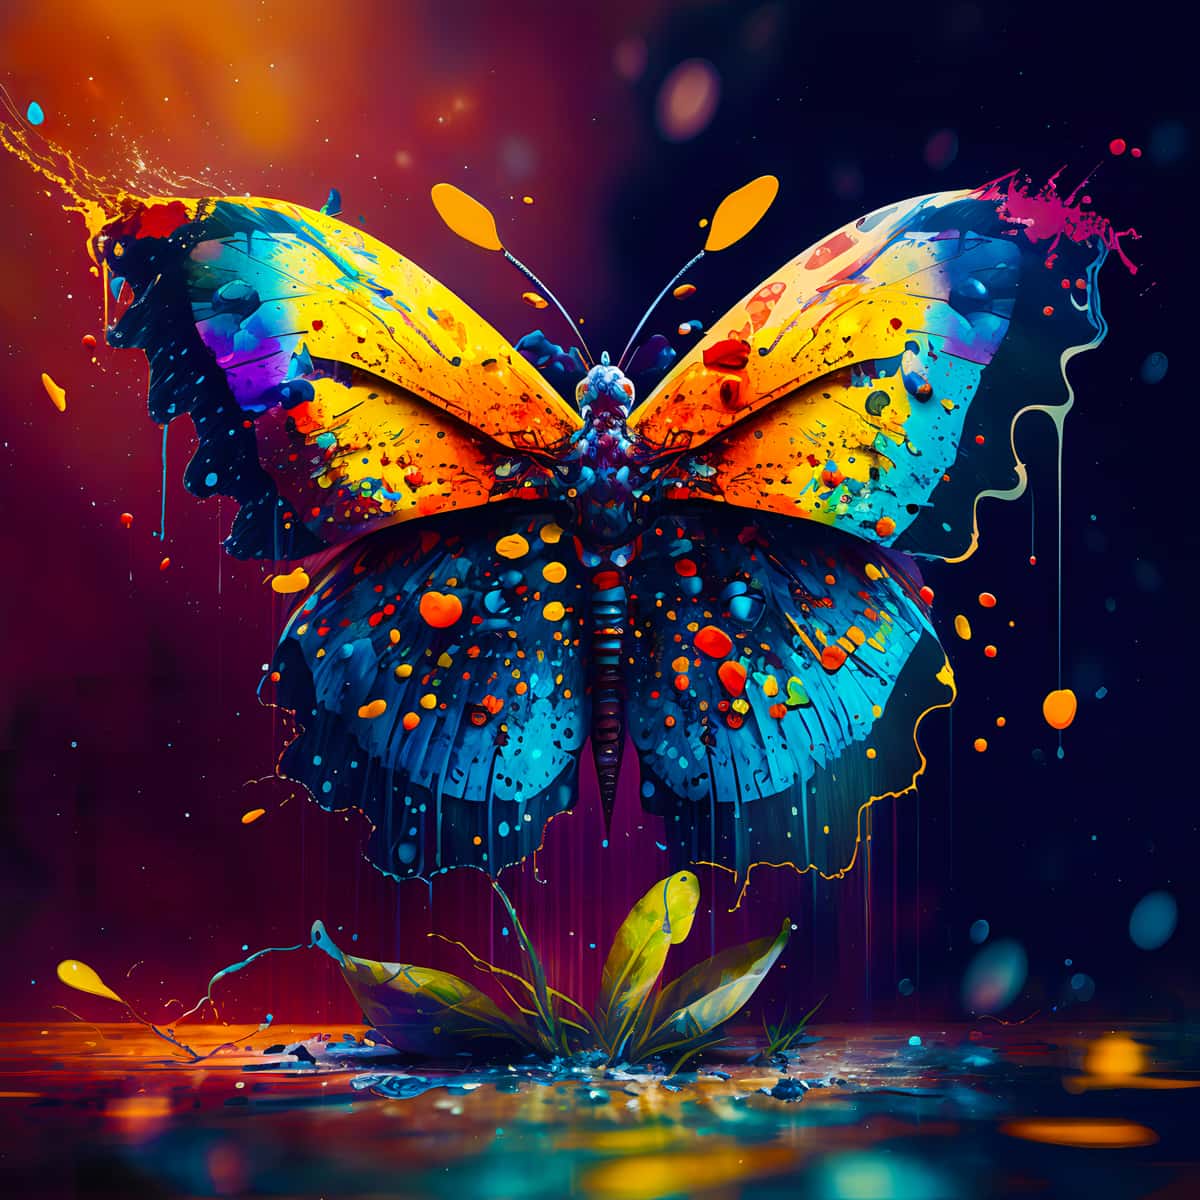 Diamond Painting - Schmetterling auf Wasser - gedruckt in Ultra-HD - Neu eingetroffen, Quadratisch, Schmetterling, Tiere